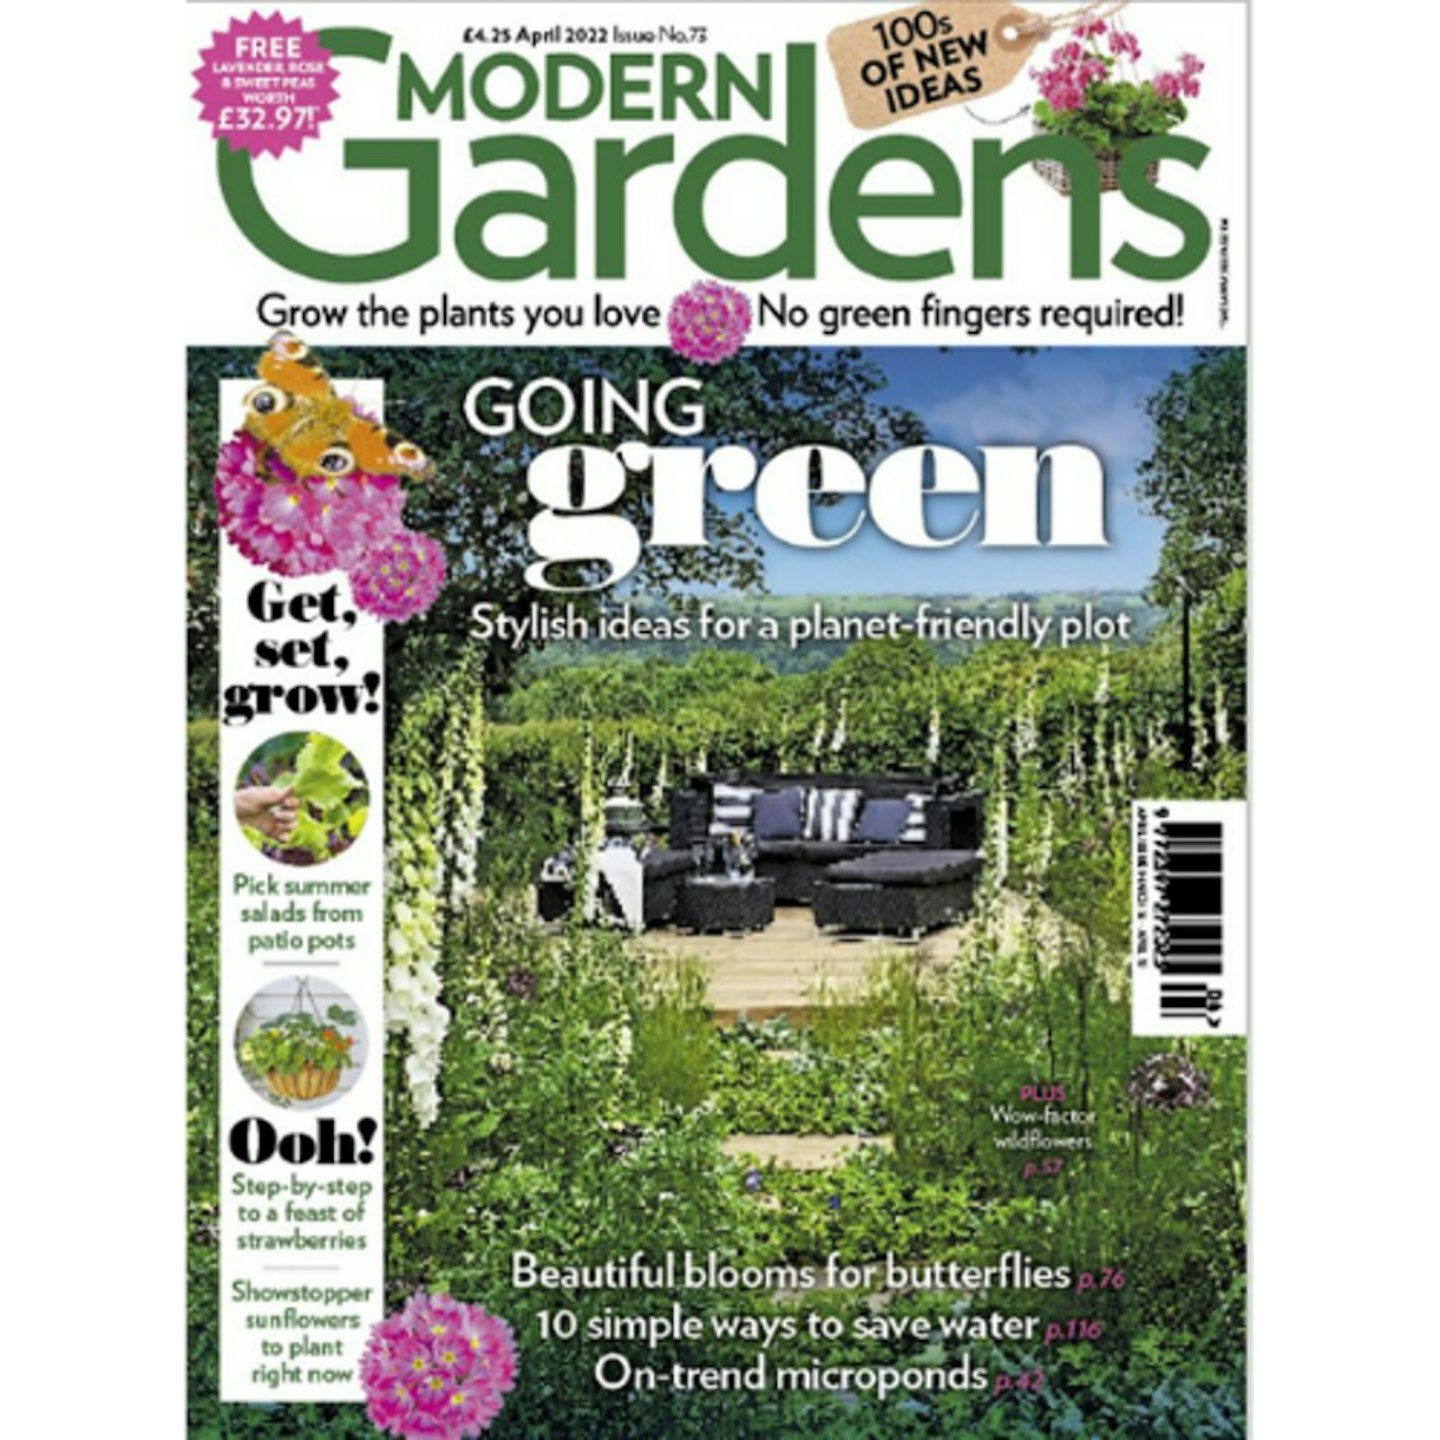 Modern Gardens June Issue